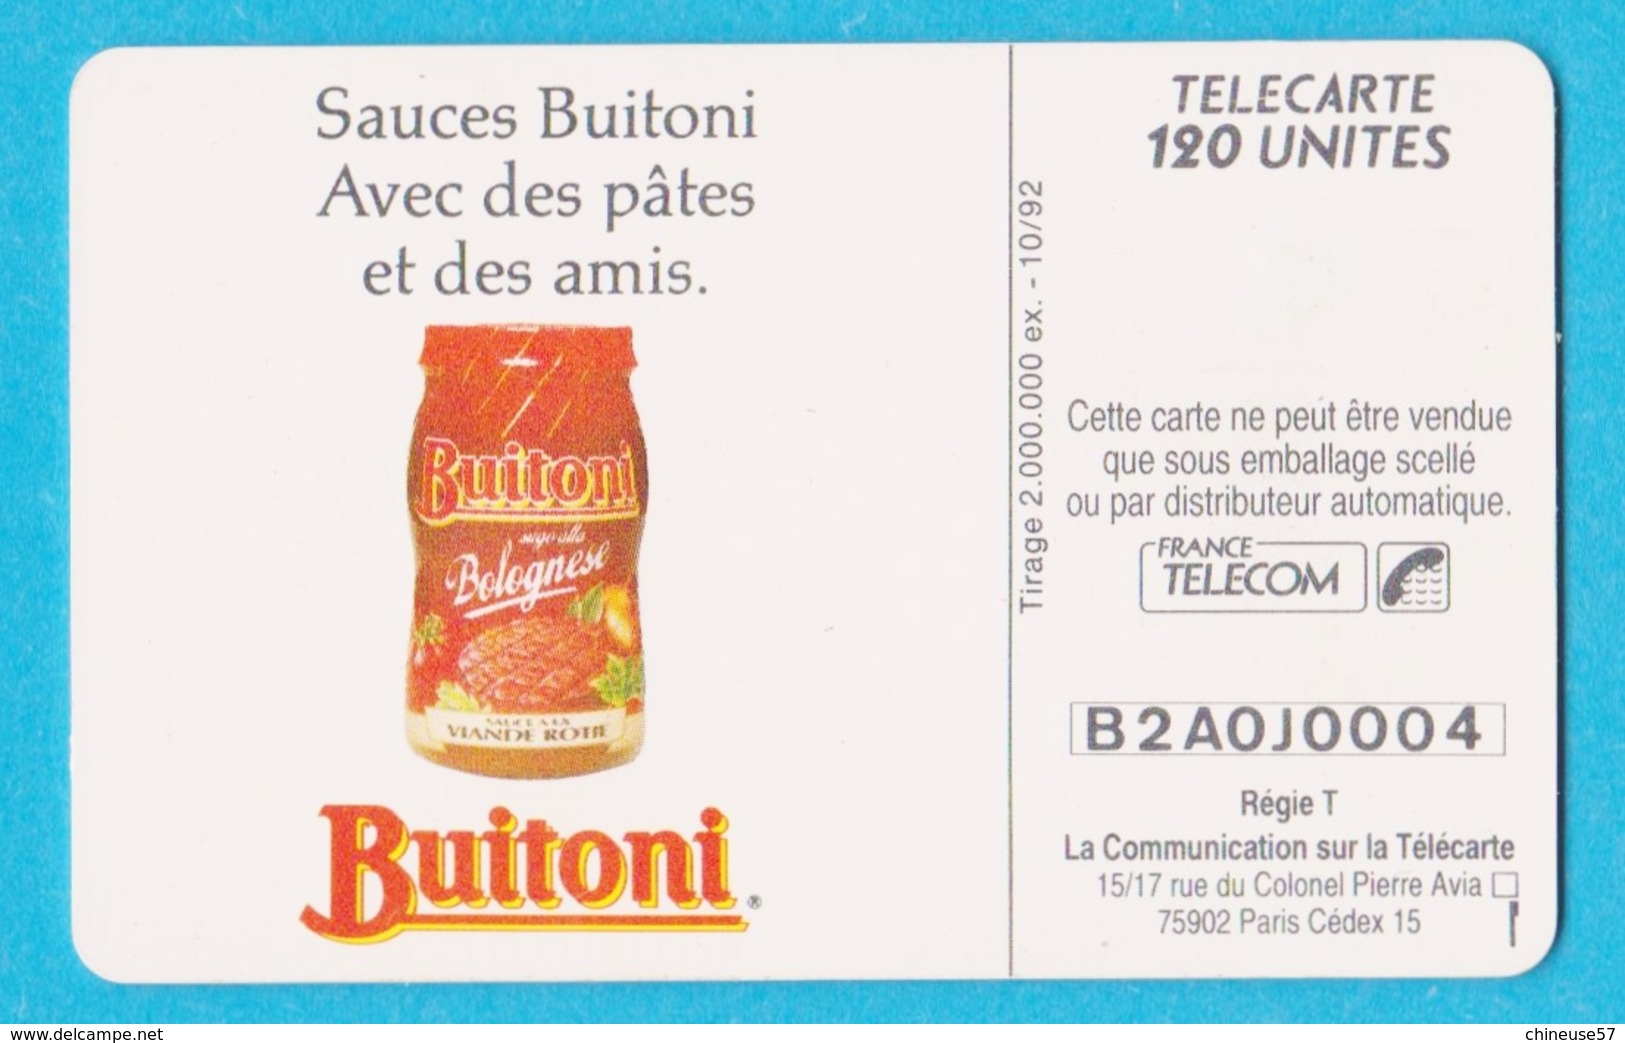 Télécarte 120 Buitoni Sauces Pates - 120 Units